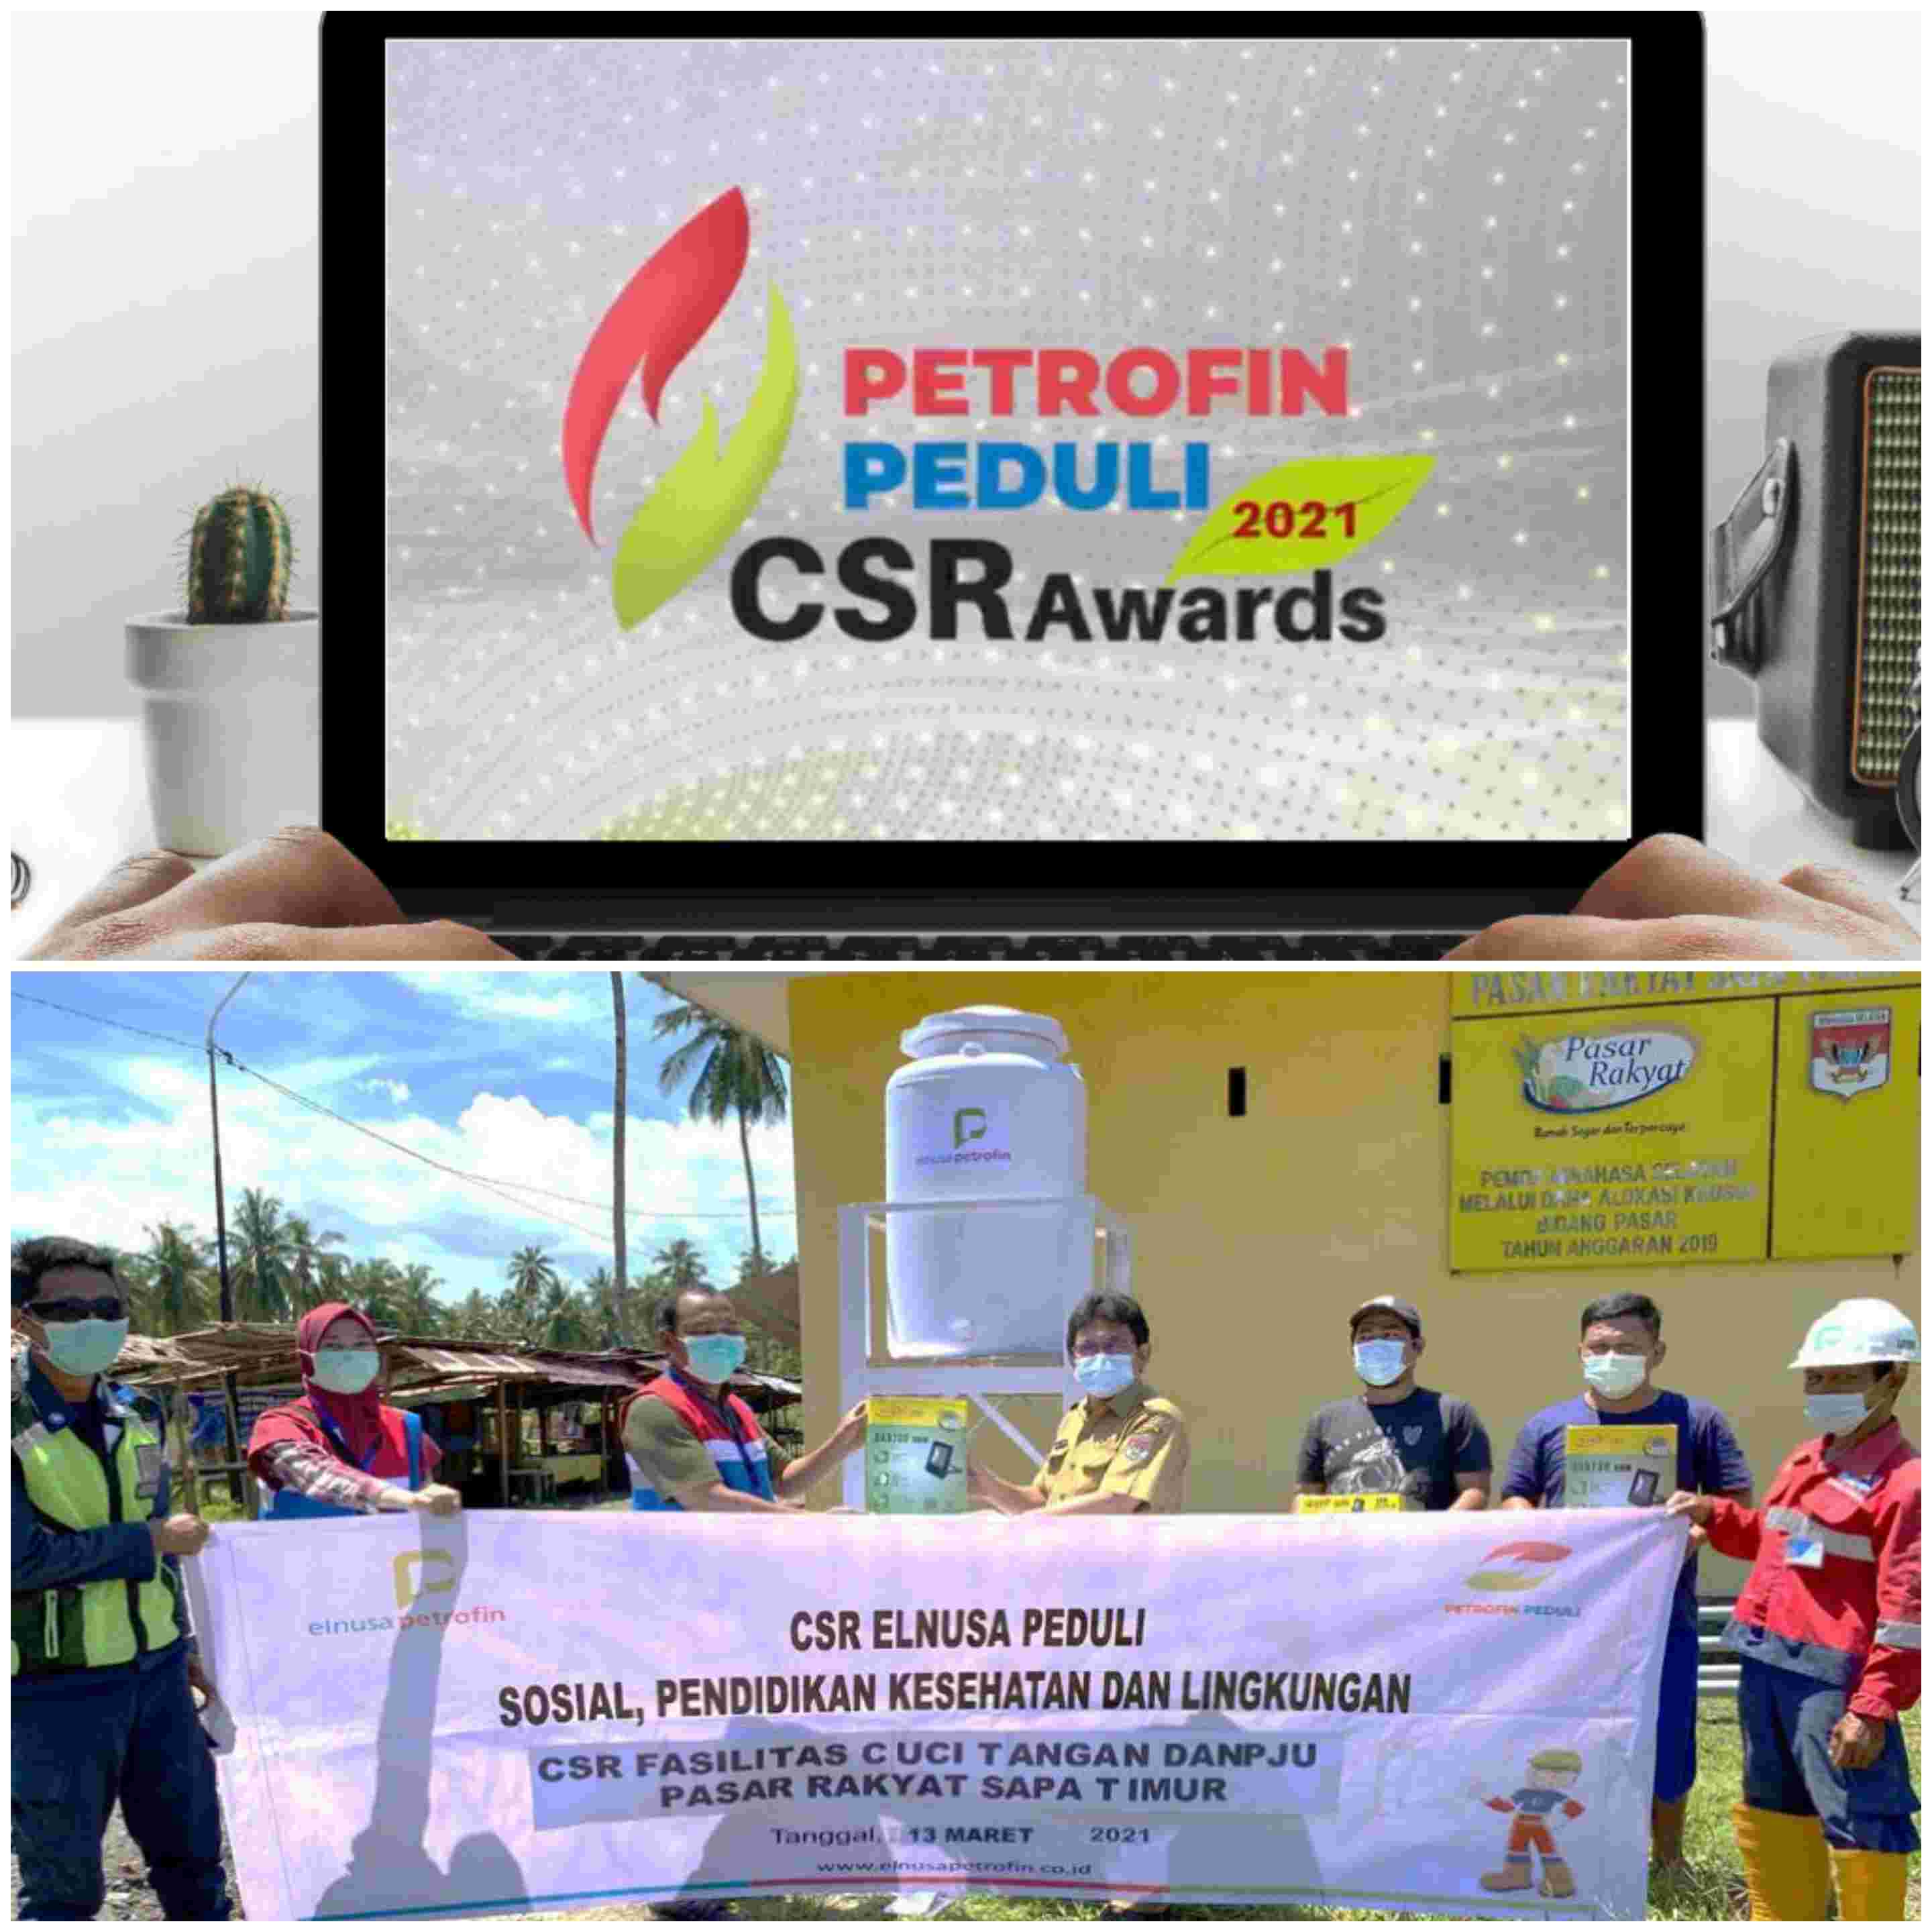 Elnusa Petrofin Gelar Petrofin Peduli CSR Awards, Ajang Penghargaan di Internal Perusahaan